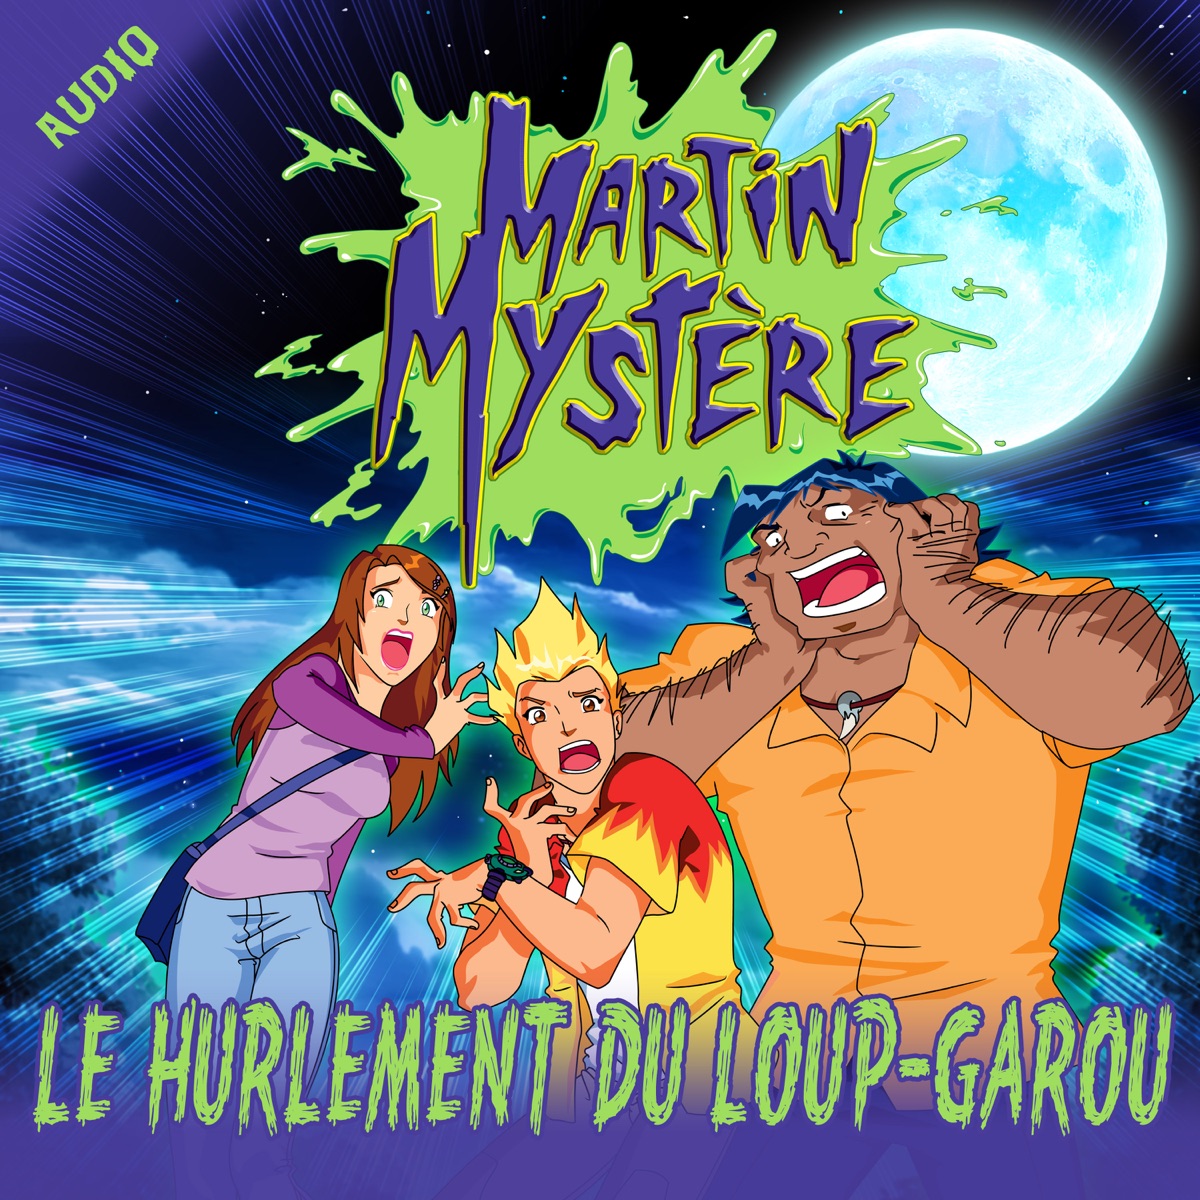 Le hurlement du loup-garou – Album par Martin Mystère les histoires audio –  Apple Music